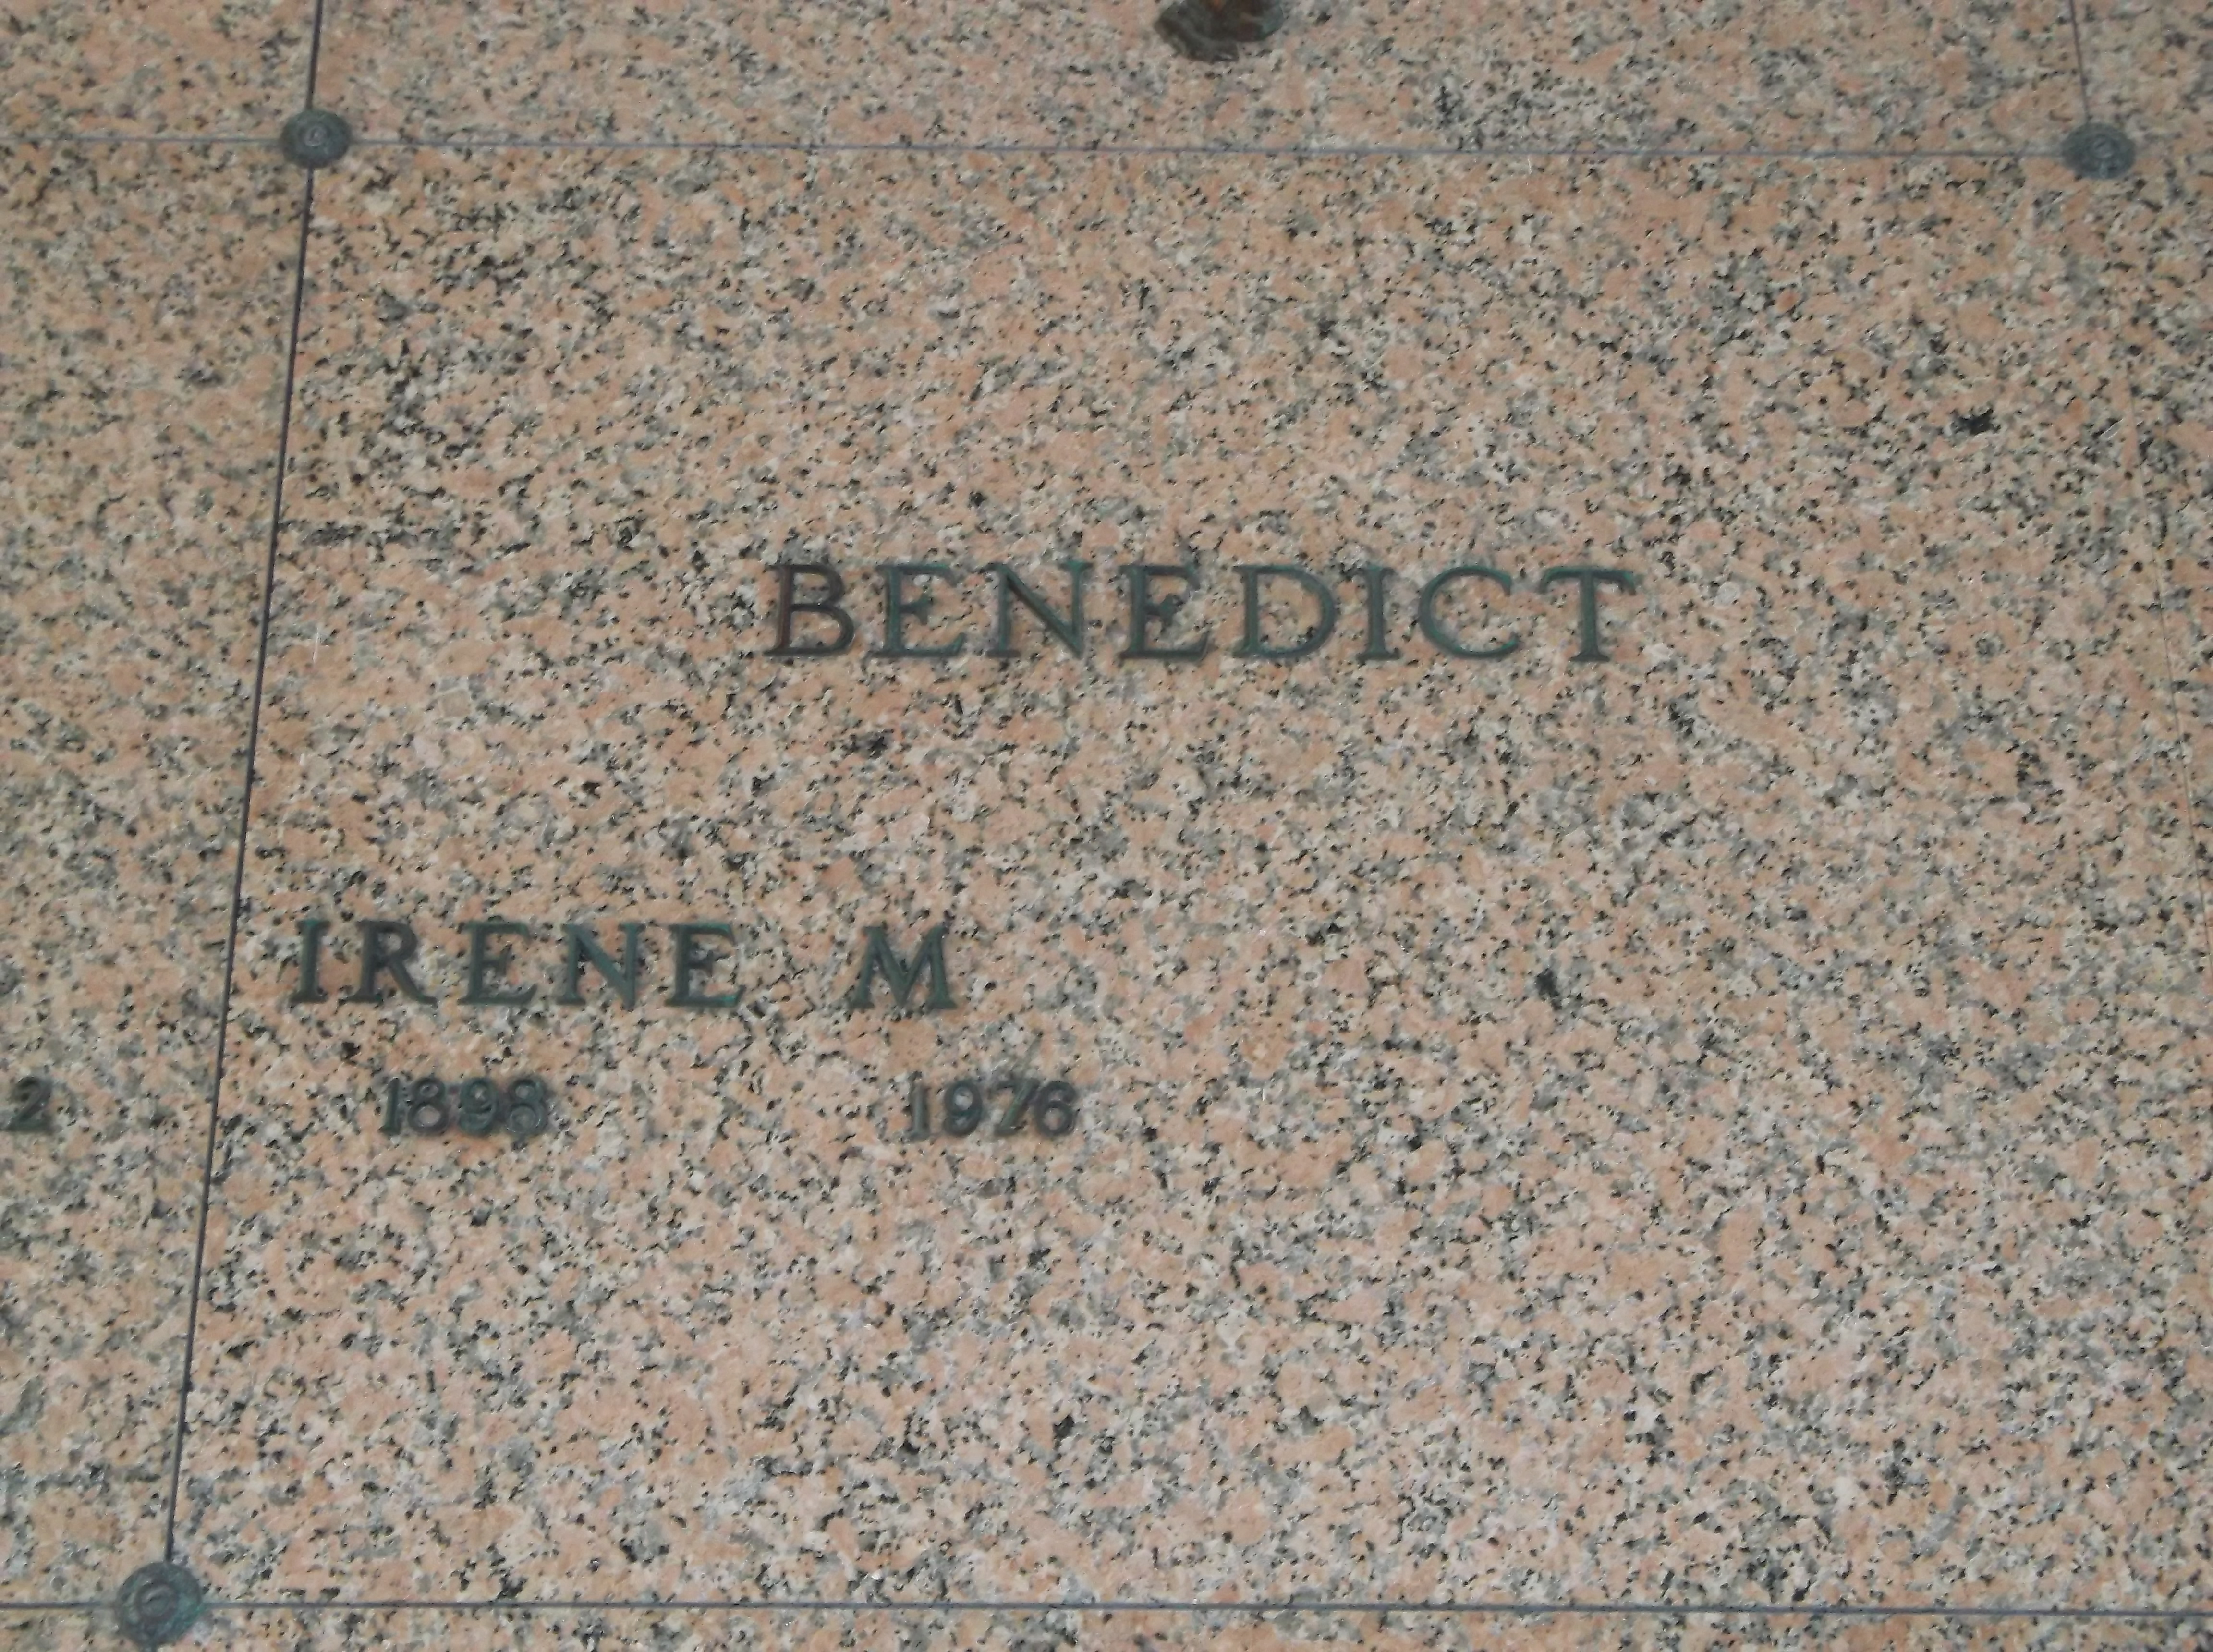 Irene M Benedict